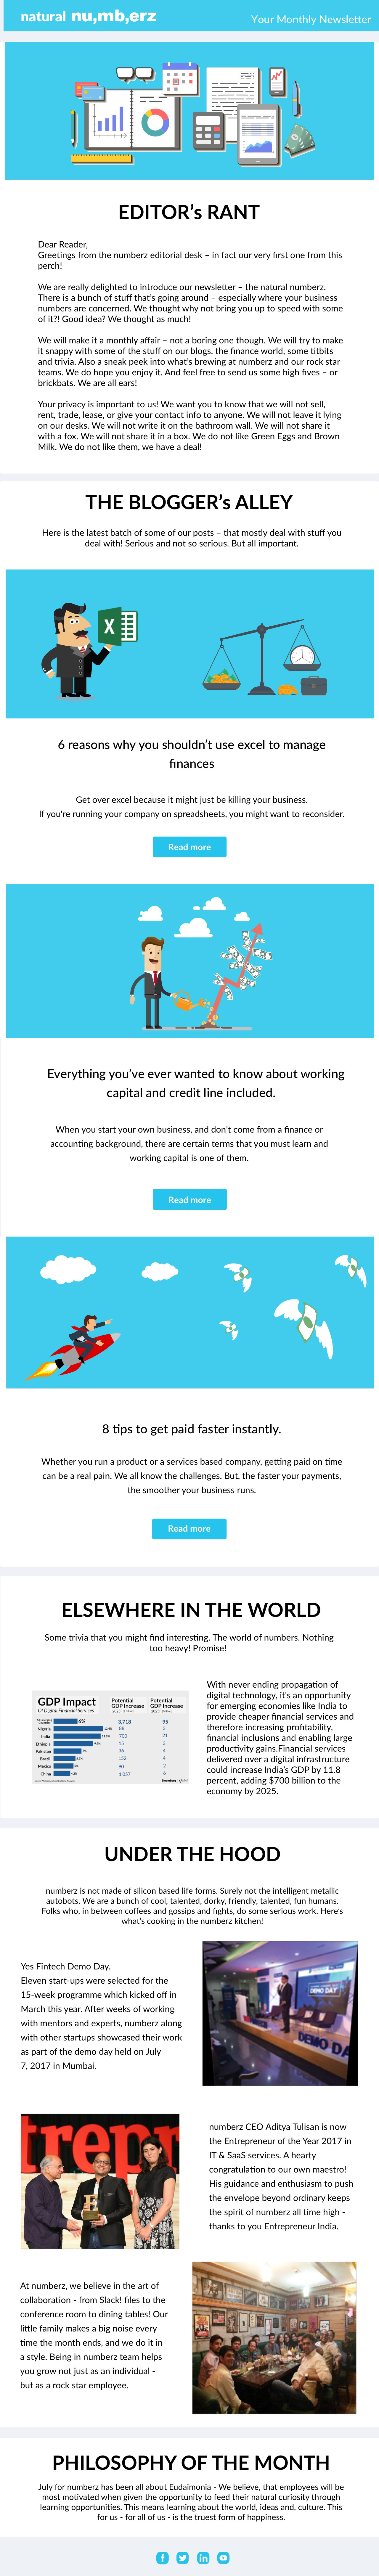 Harleen Kaur Infographic Email Design Newsletter Carosel Ad